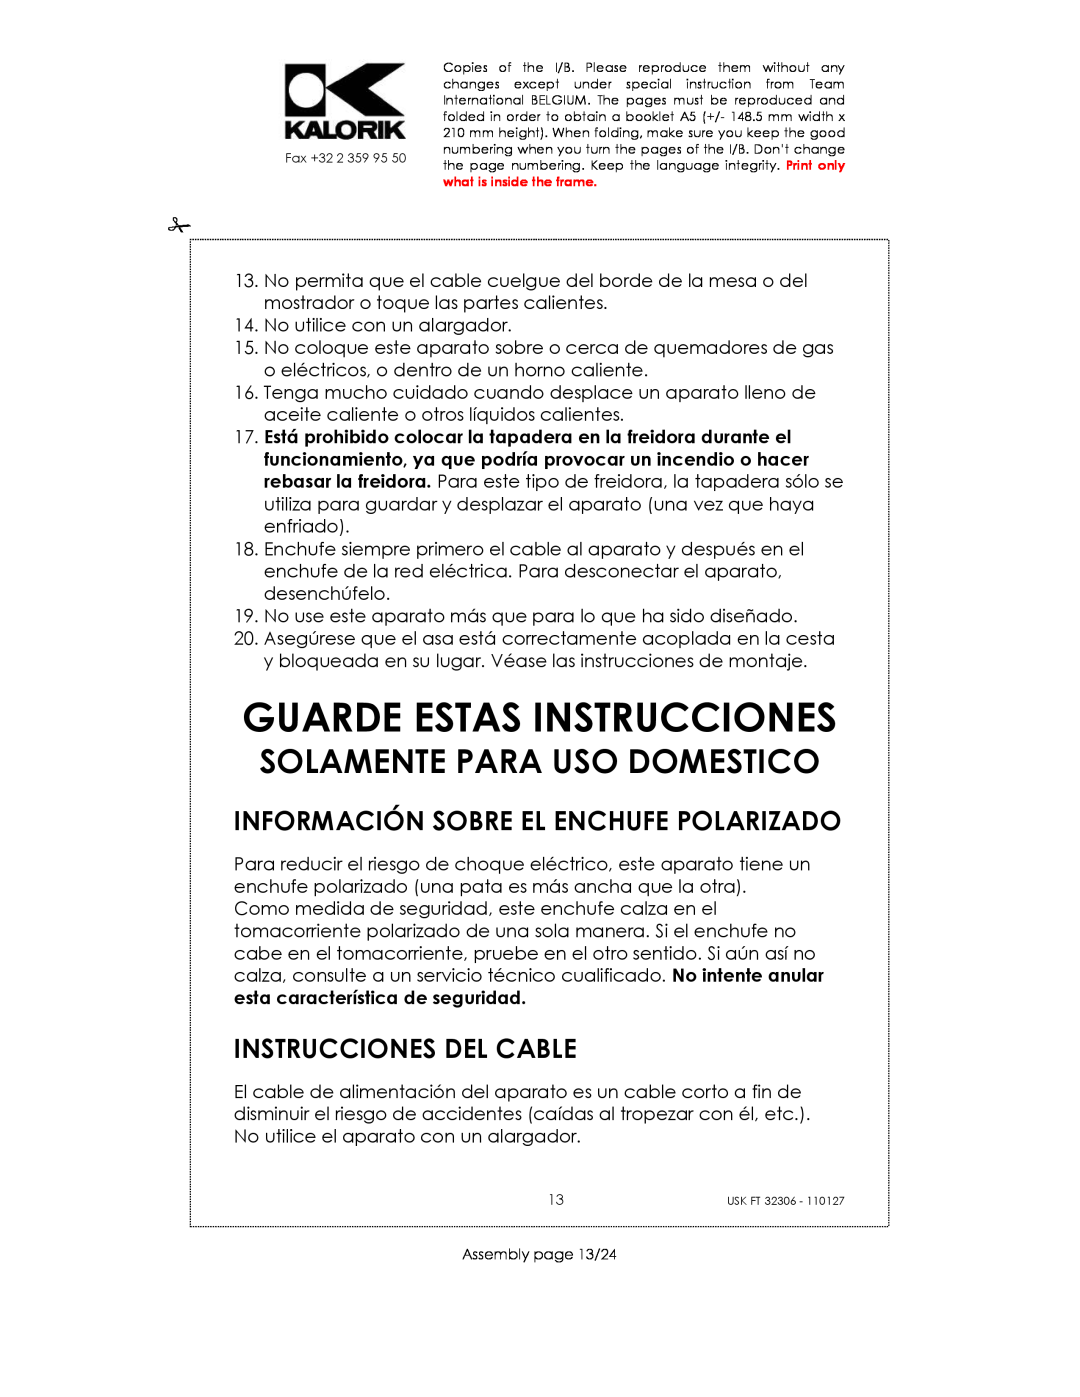 Kalorik USK FT 32306 manual Guarde Estas Instrucciones, Información Sobre El Enchufe Polarizado, Instrucciones Del Cable 